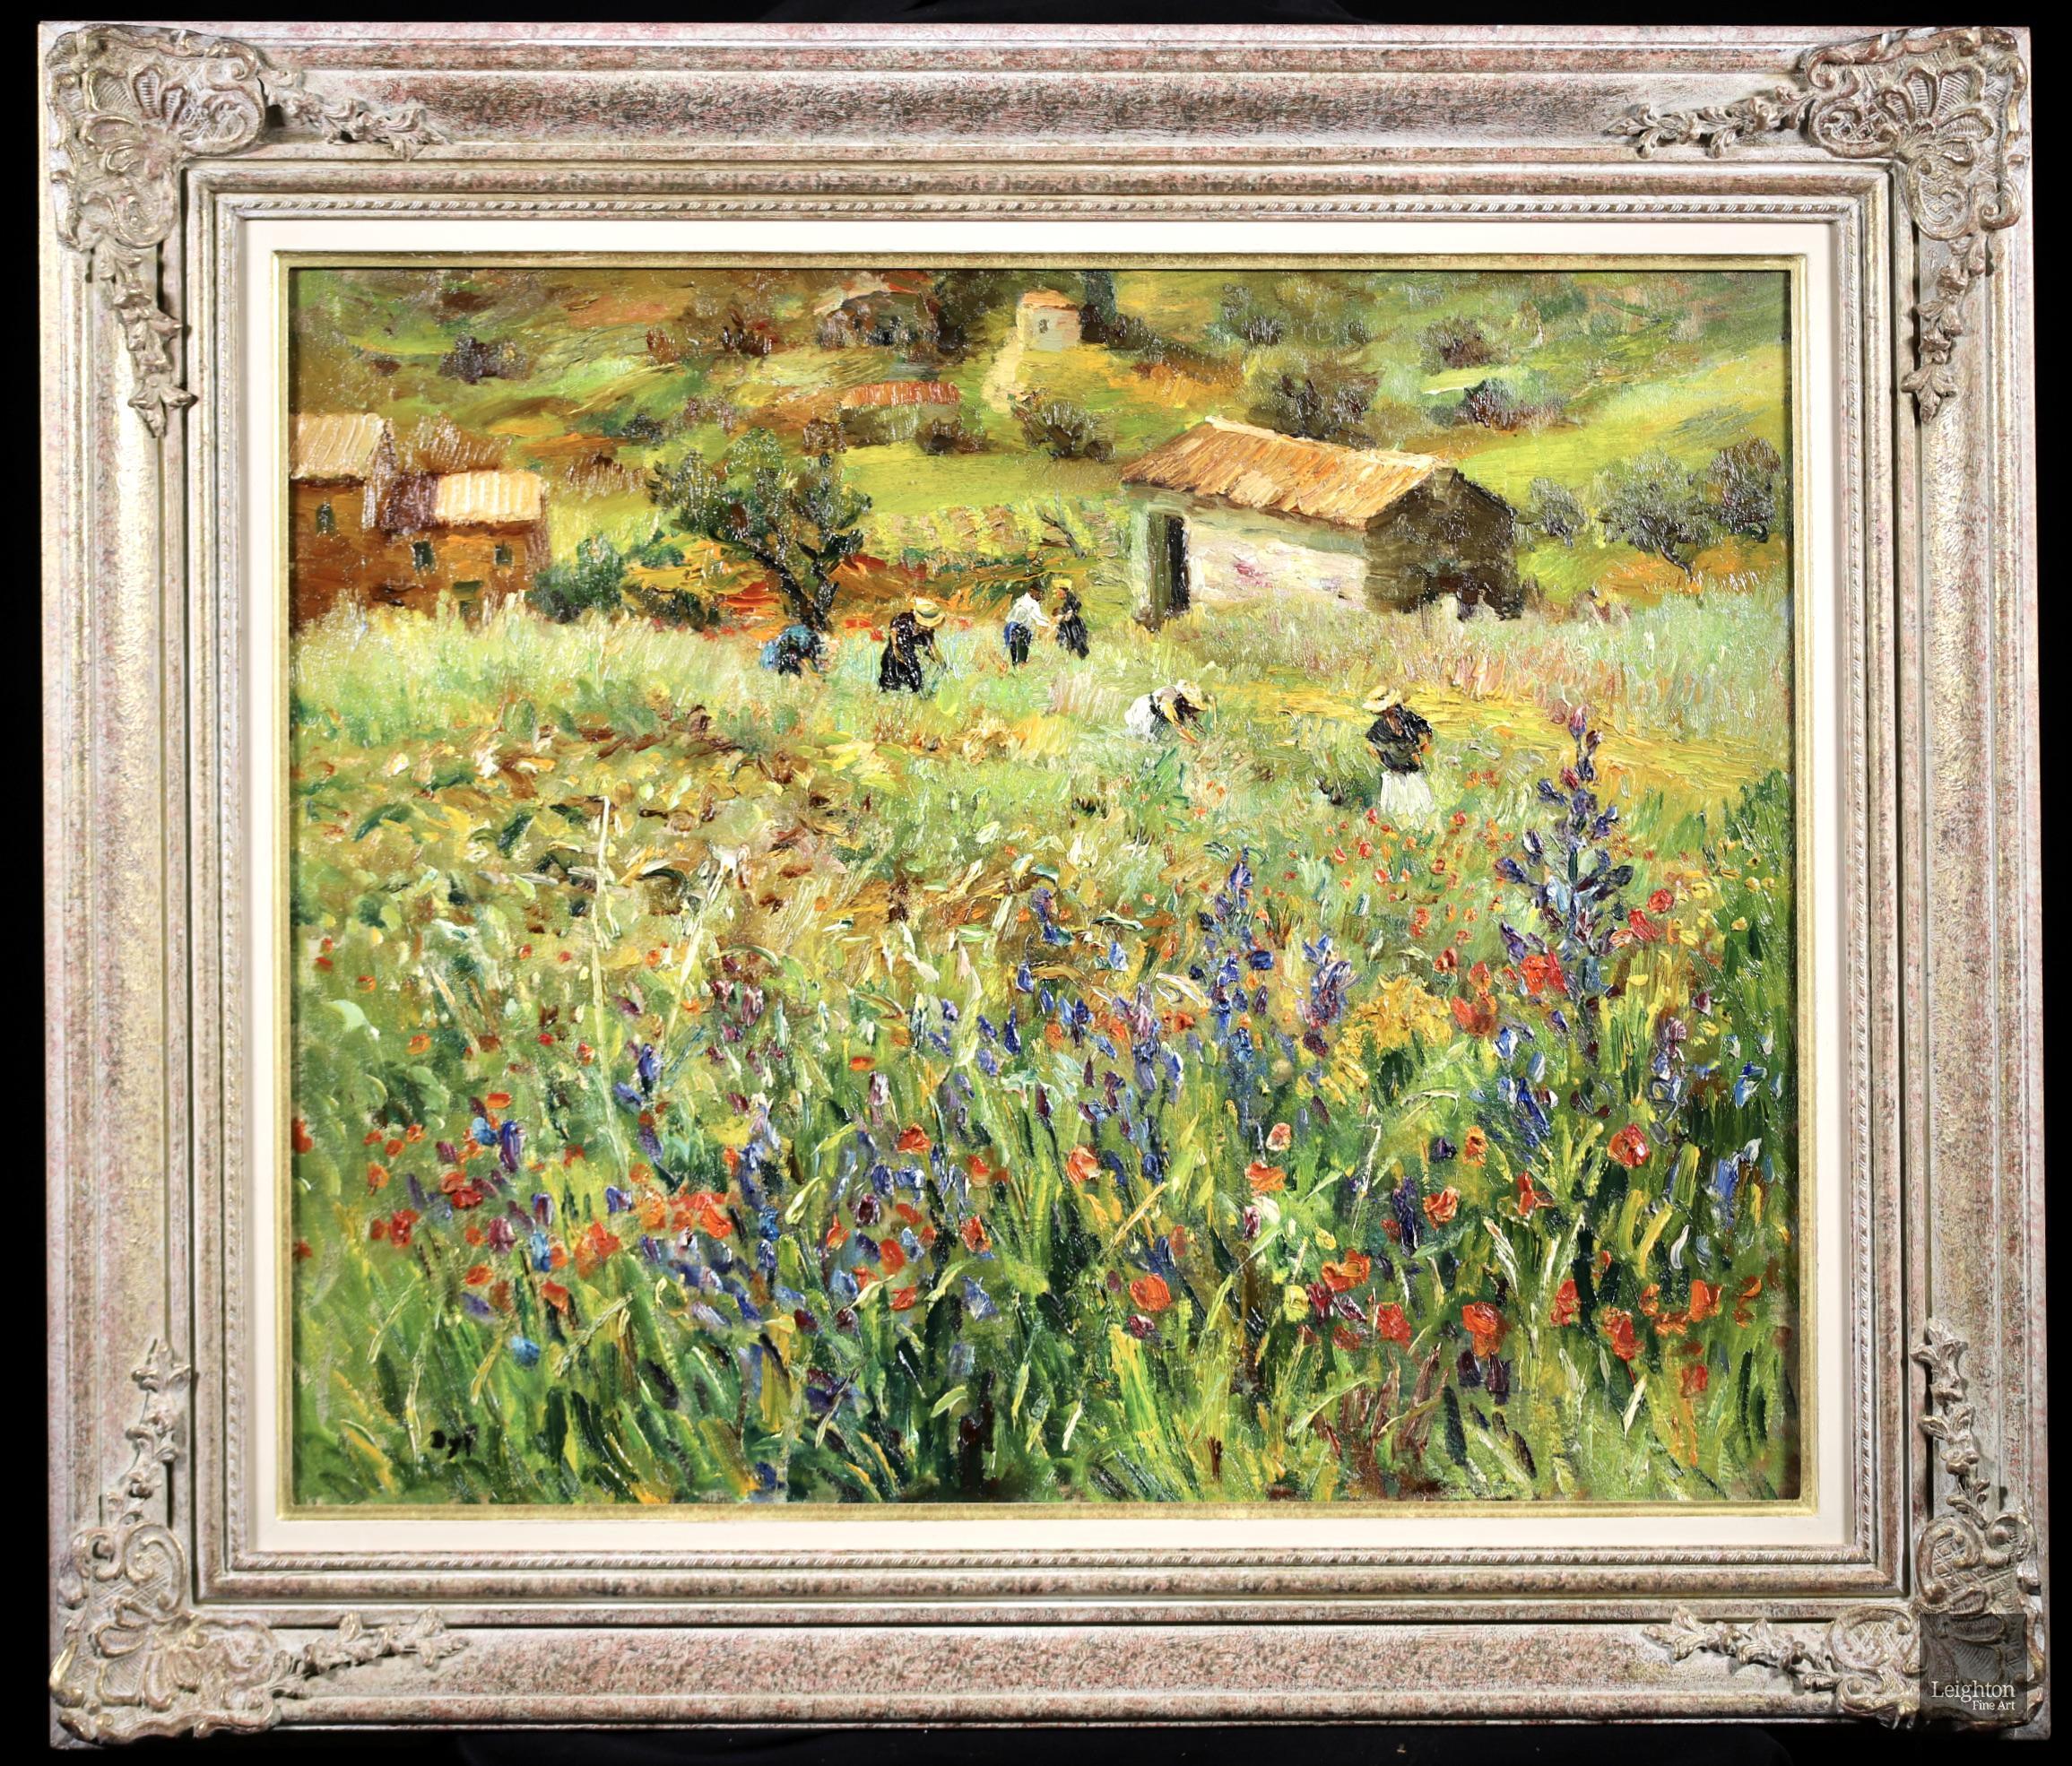 Huile sur toile signée de Marcel Dyf, peintre post impressionniste français très recherché, représentant des figures dans un paysage. L'œuvre représente des travailleurs cueillant des fleurs dans un champ de coquelicots à St Paul de Vence, une ville